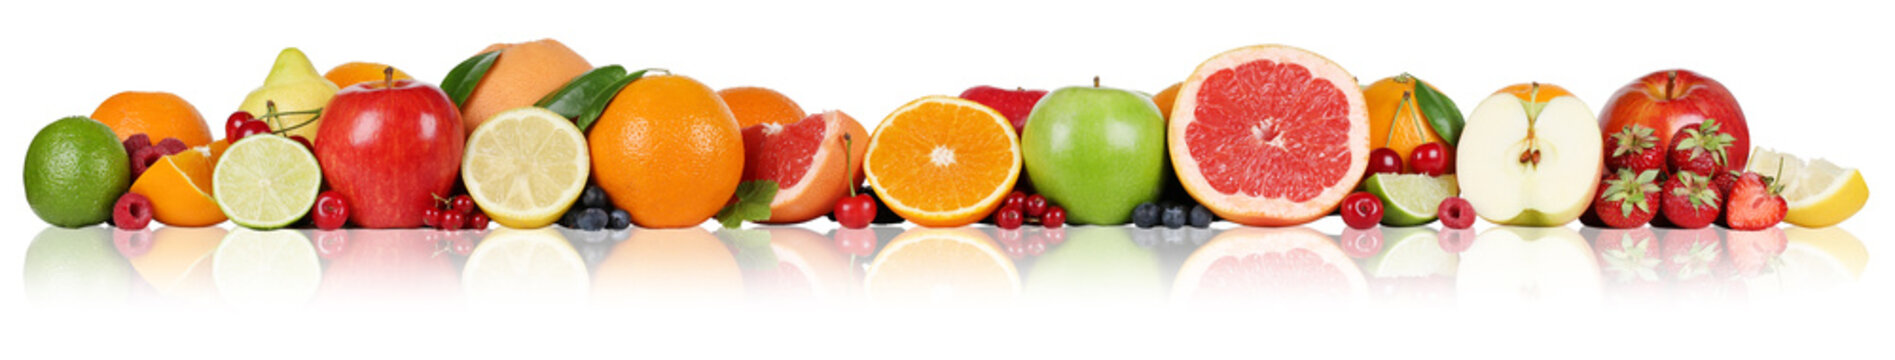 Früchte Orangen Zitronen Apfel Erdbeeren in einer Reihe